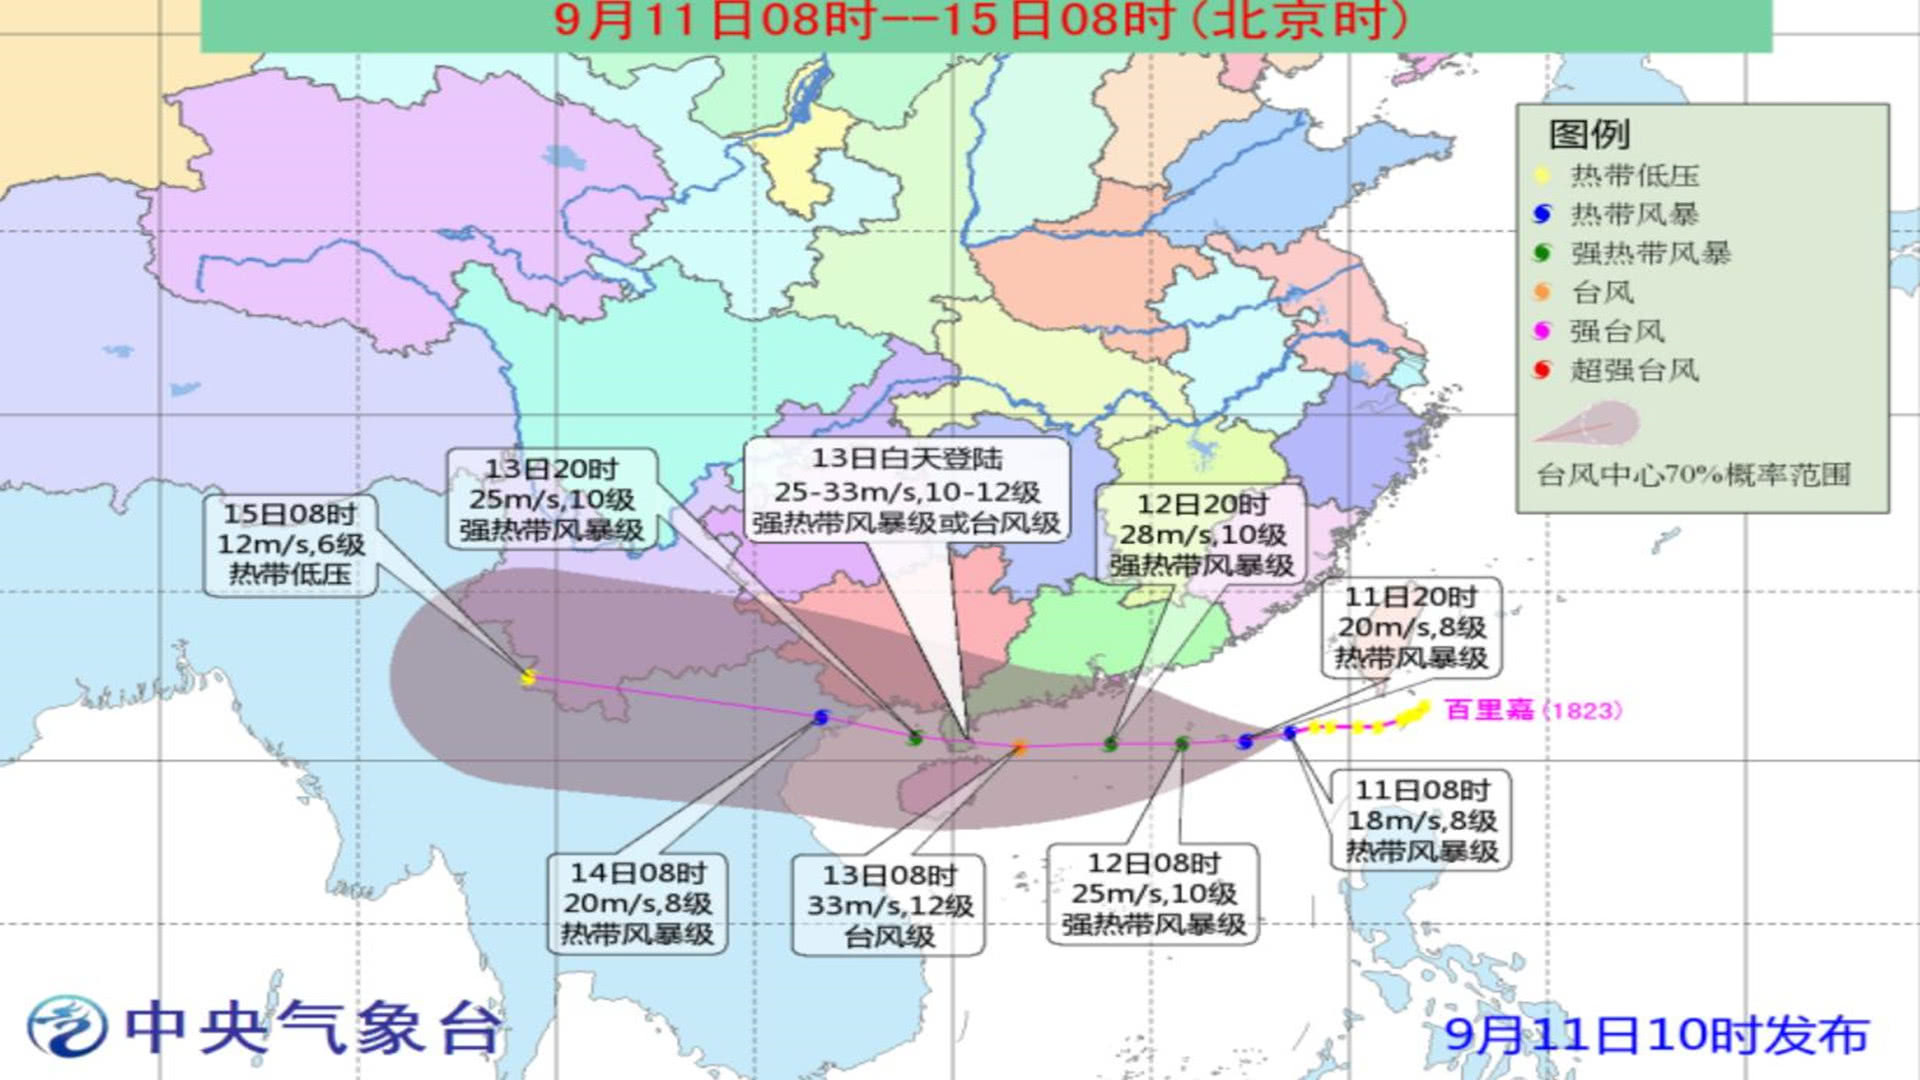 台风山竹百里嘉将登陆广东！2018台风最新消息 第22号/23号台风路径实时发布系统图更新